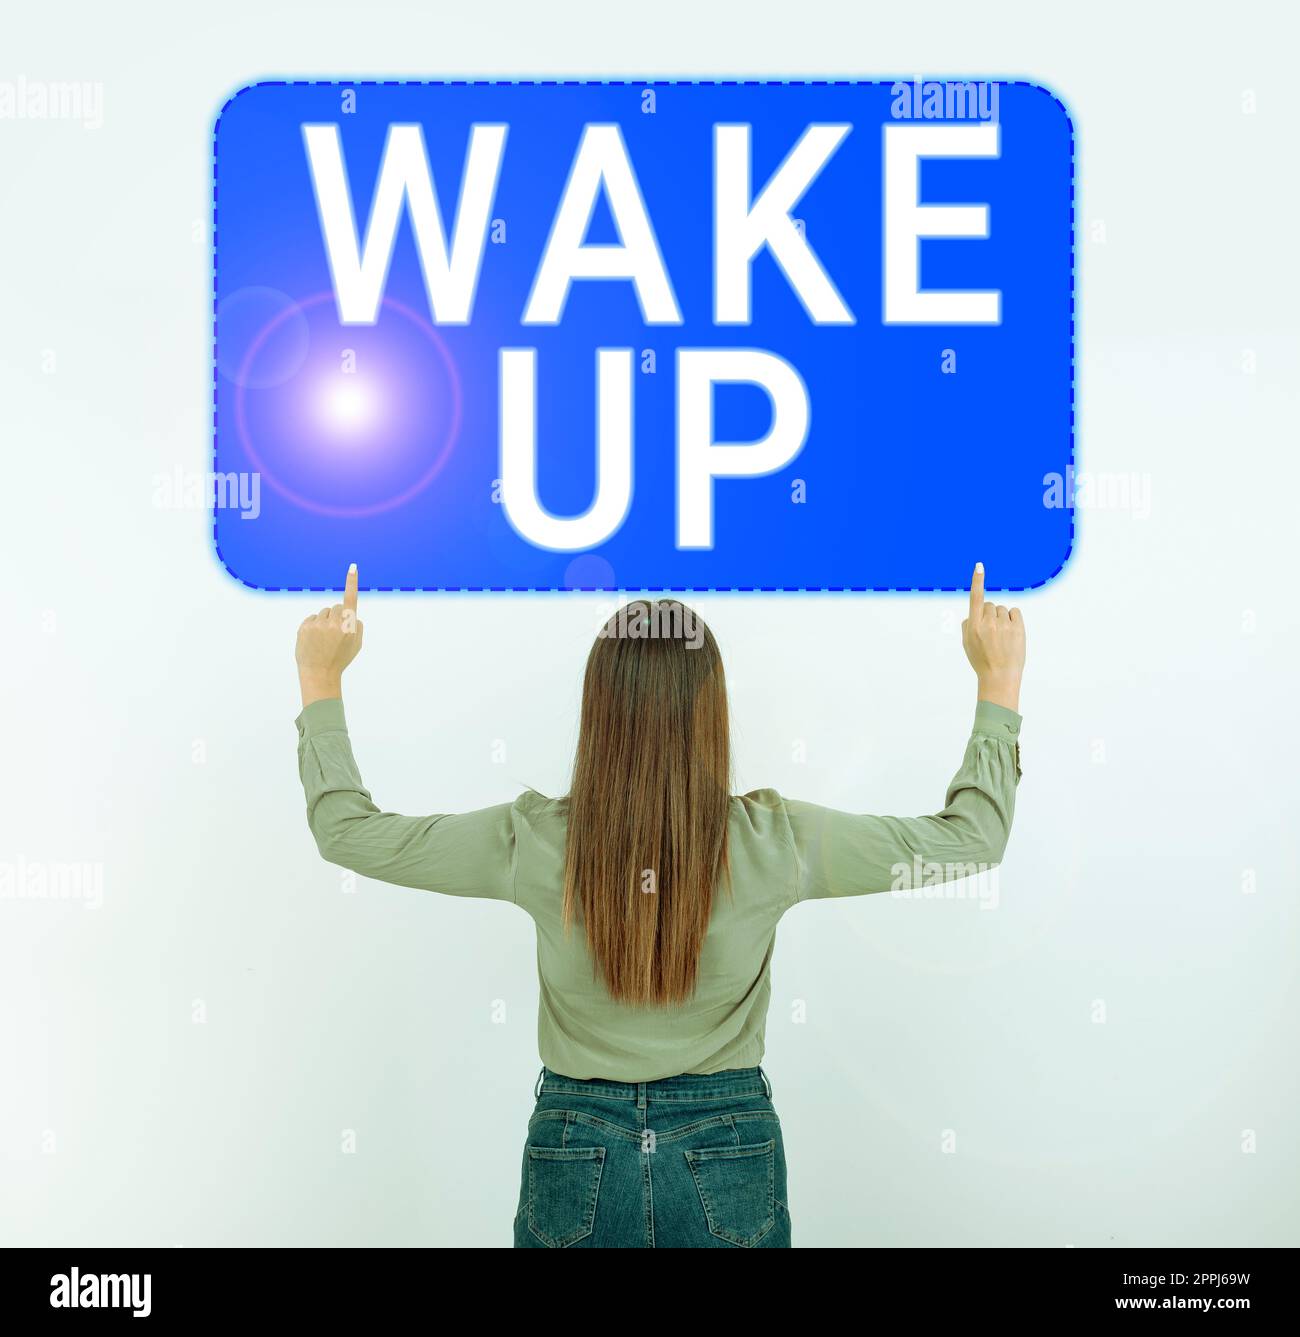 Inspiration mit dem Schild Wake up. Ein Wort, das auf einem Fall geschrieben wurde, in dem eine Person aufwacht oder aufgeweckt wird, erhebt sich Stockfoto